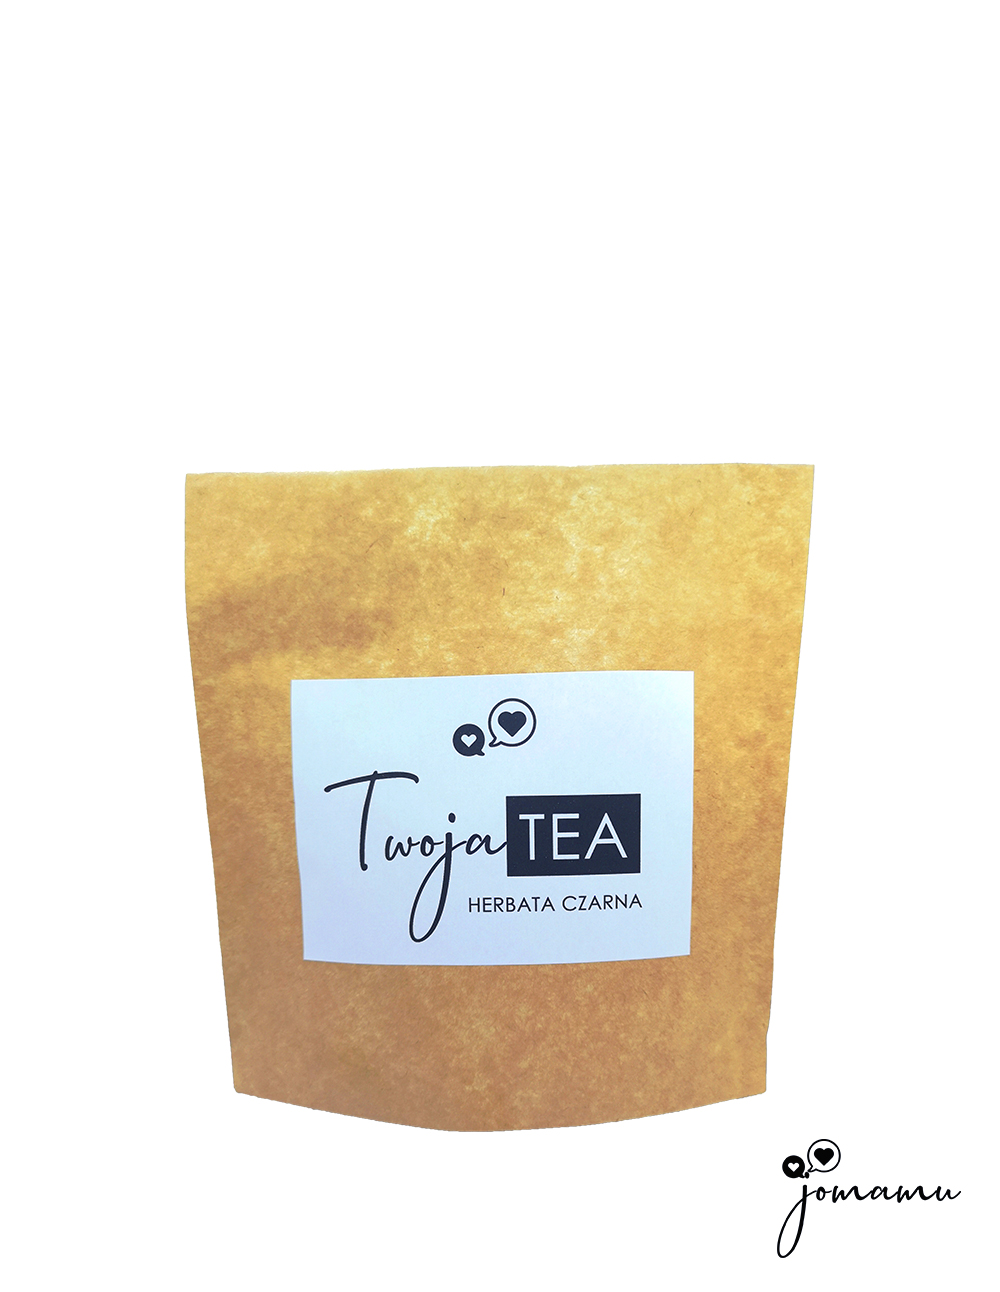 Twoja tea - czarna herbata liściasta od jomamu w Bio degradowalnym opakowaniu